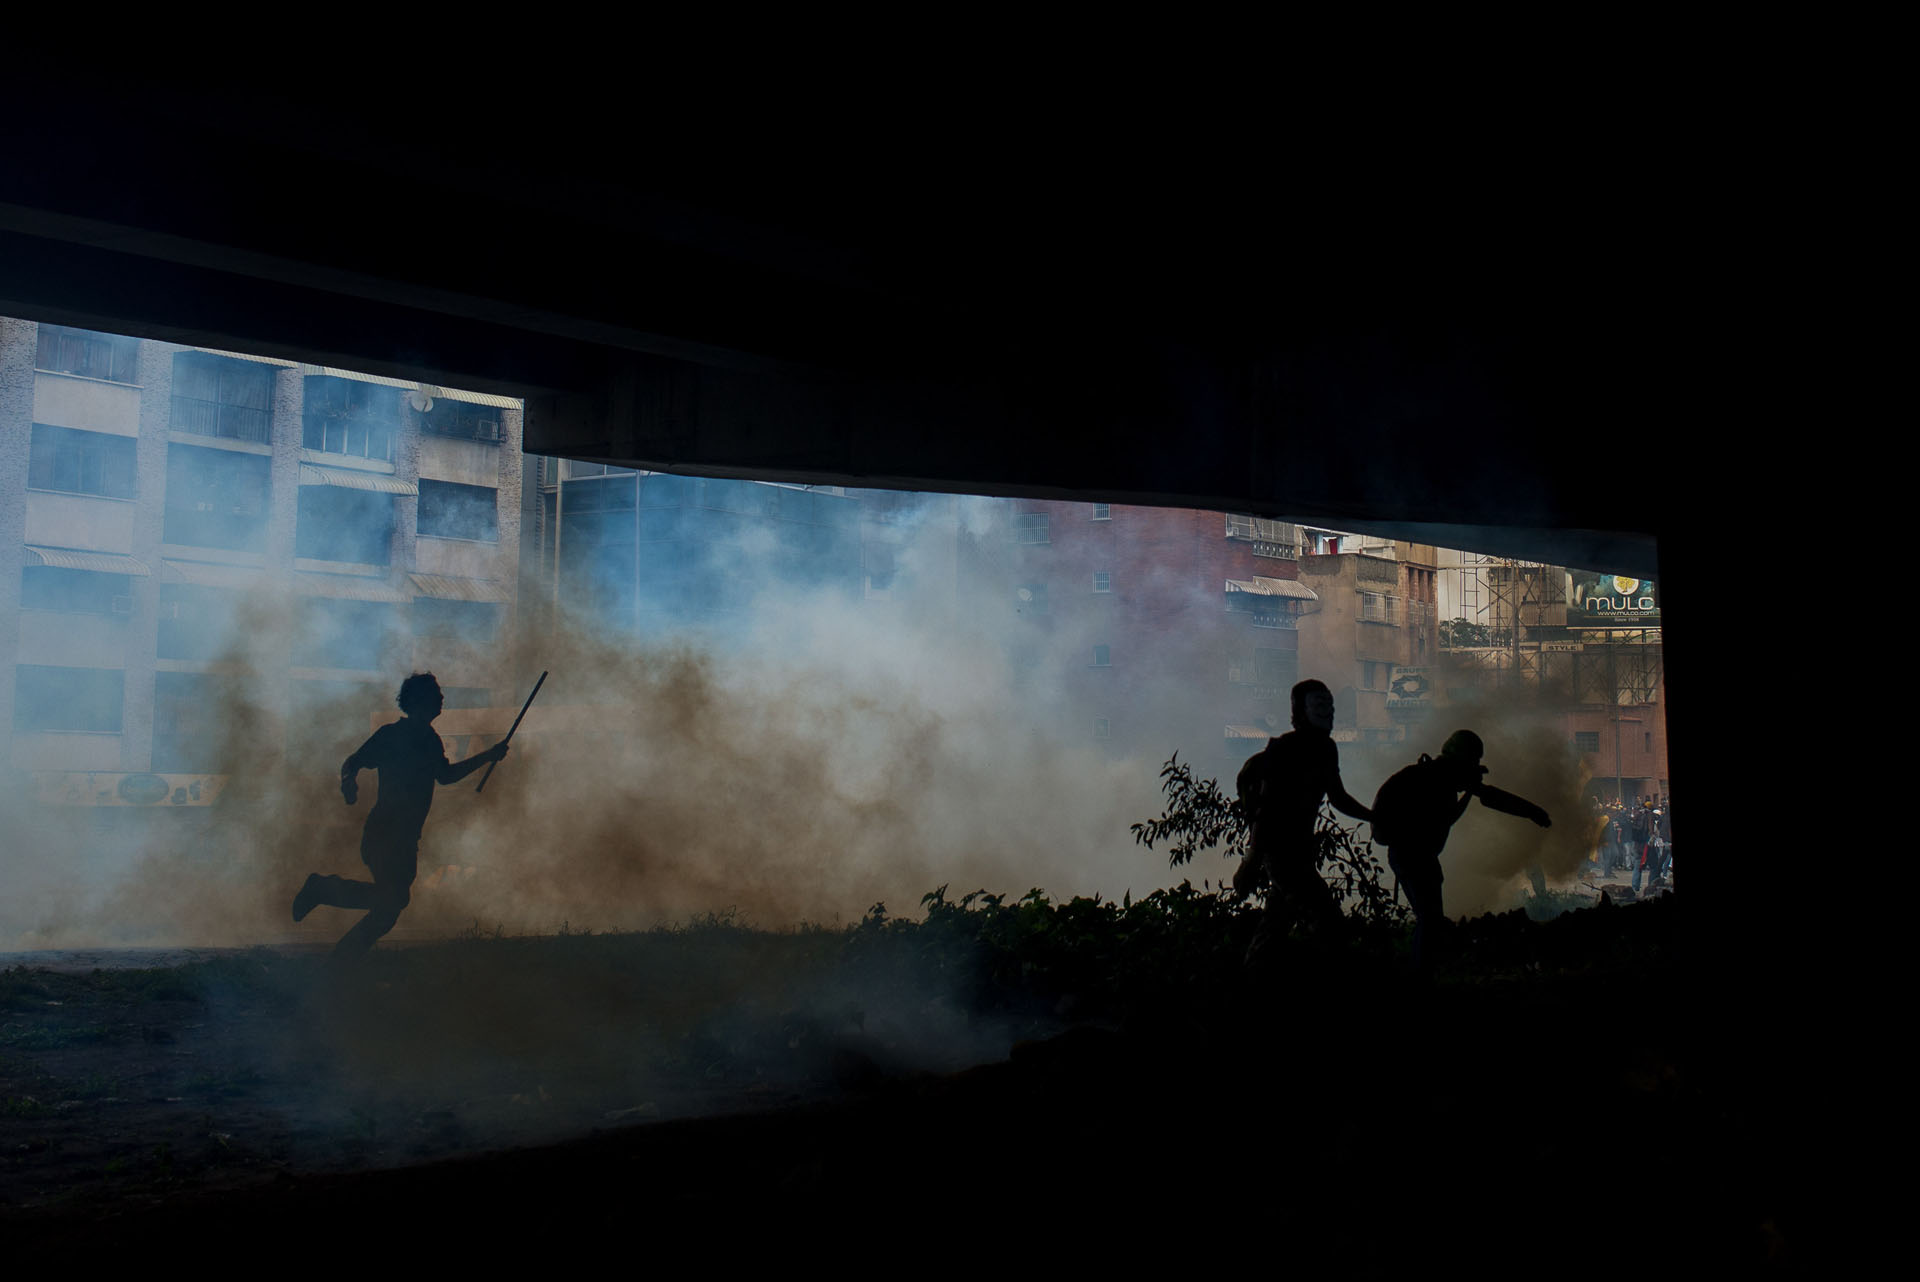 CAR01. CARACAS (VENEZUELA), 06/04/2017 - Manifestantes opositores se cubren del gas lacrimógeno durante una manifestación de opositores al gobierno de Nicolás Maduro hoy, jueves 6 de abril de 2017, en Caracas (Venezuela). Dos fotógrafos de la Agencia EFE en Caracas resultaron hoy heridos durante una protesta opositora en Caracas cuando agentes de los cuerpos de seguridad dispararon a quemarropa contra ellos mientras cubrían gráficamente la manifestación en el este de la capital venezolana. EFE/Manaure Quintero